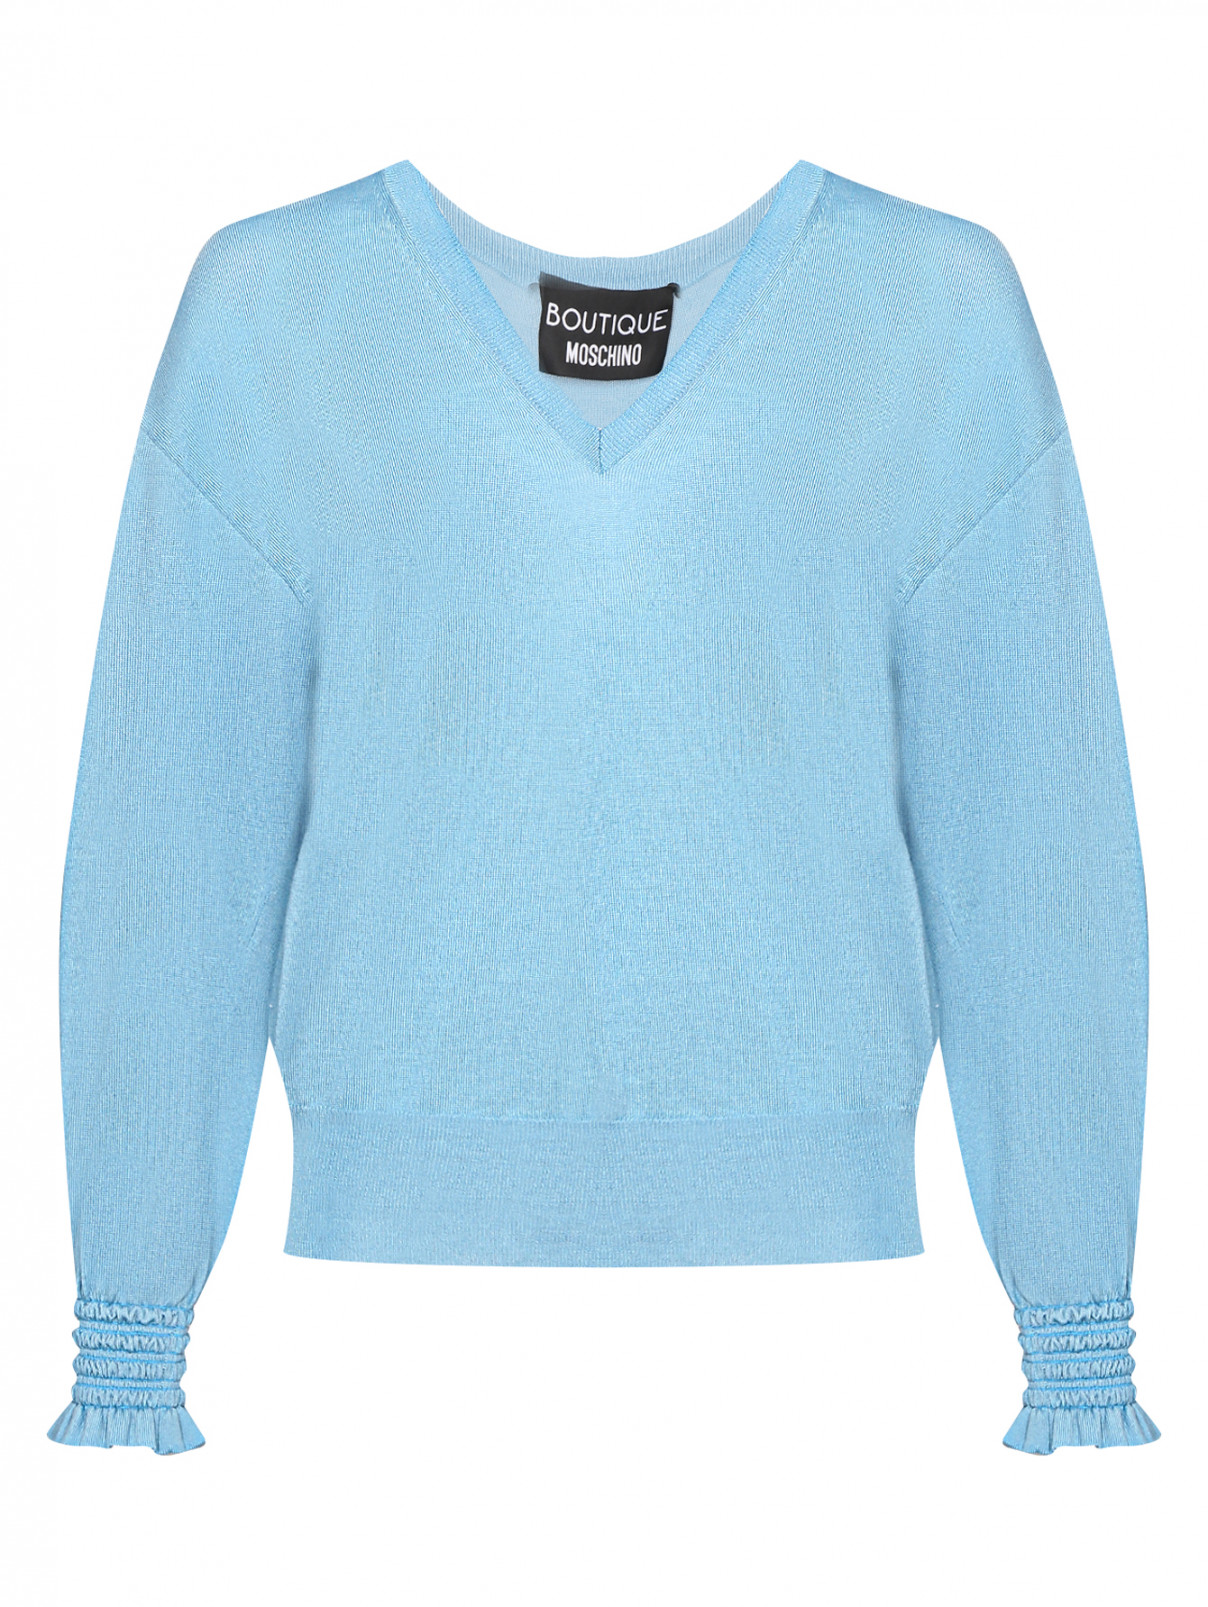 Джемпер из шерсти с V-образным вырезом Moschino Boutique  –  Общий вид  – Цвет:  Синий